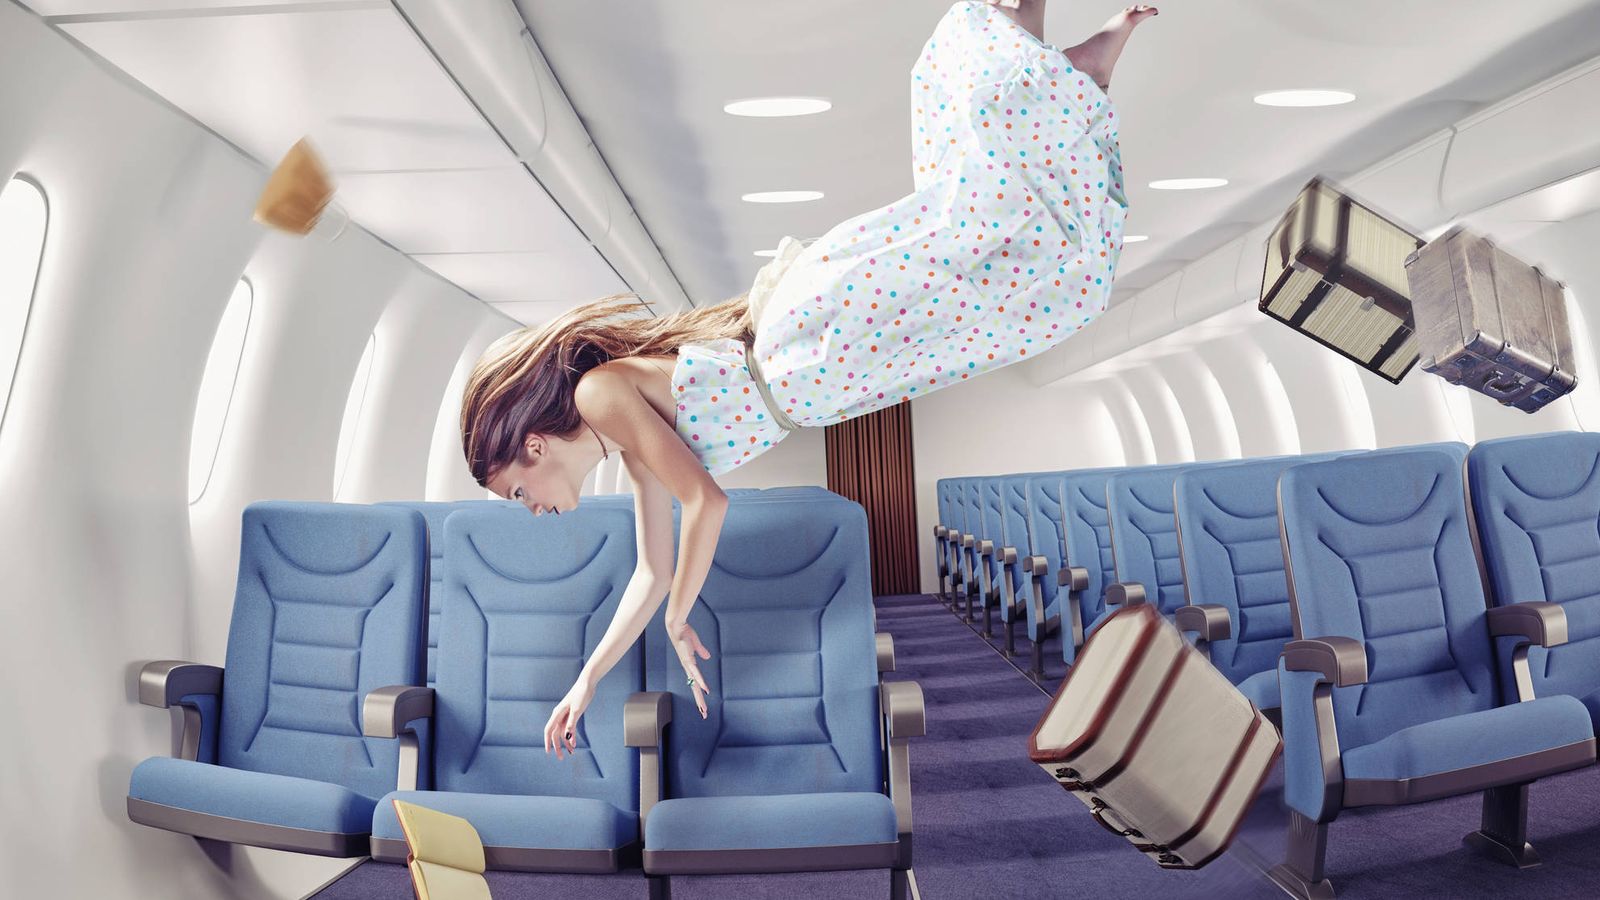 Foto: Una mujer da una vuelta de campana en un avión. (iStock)